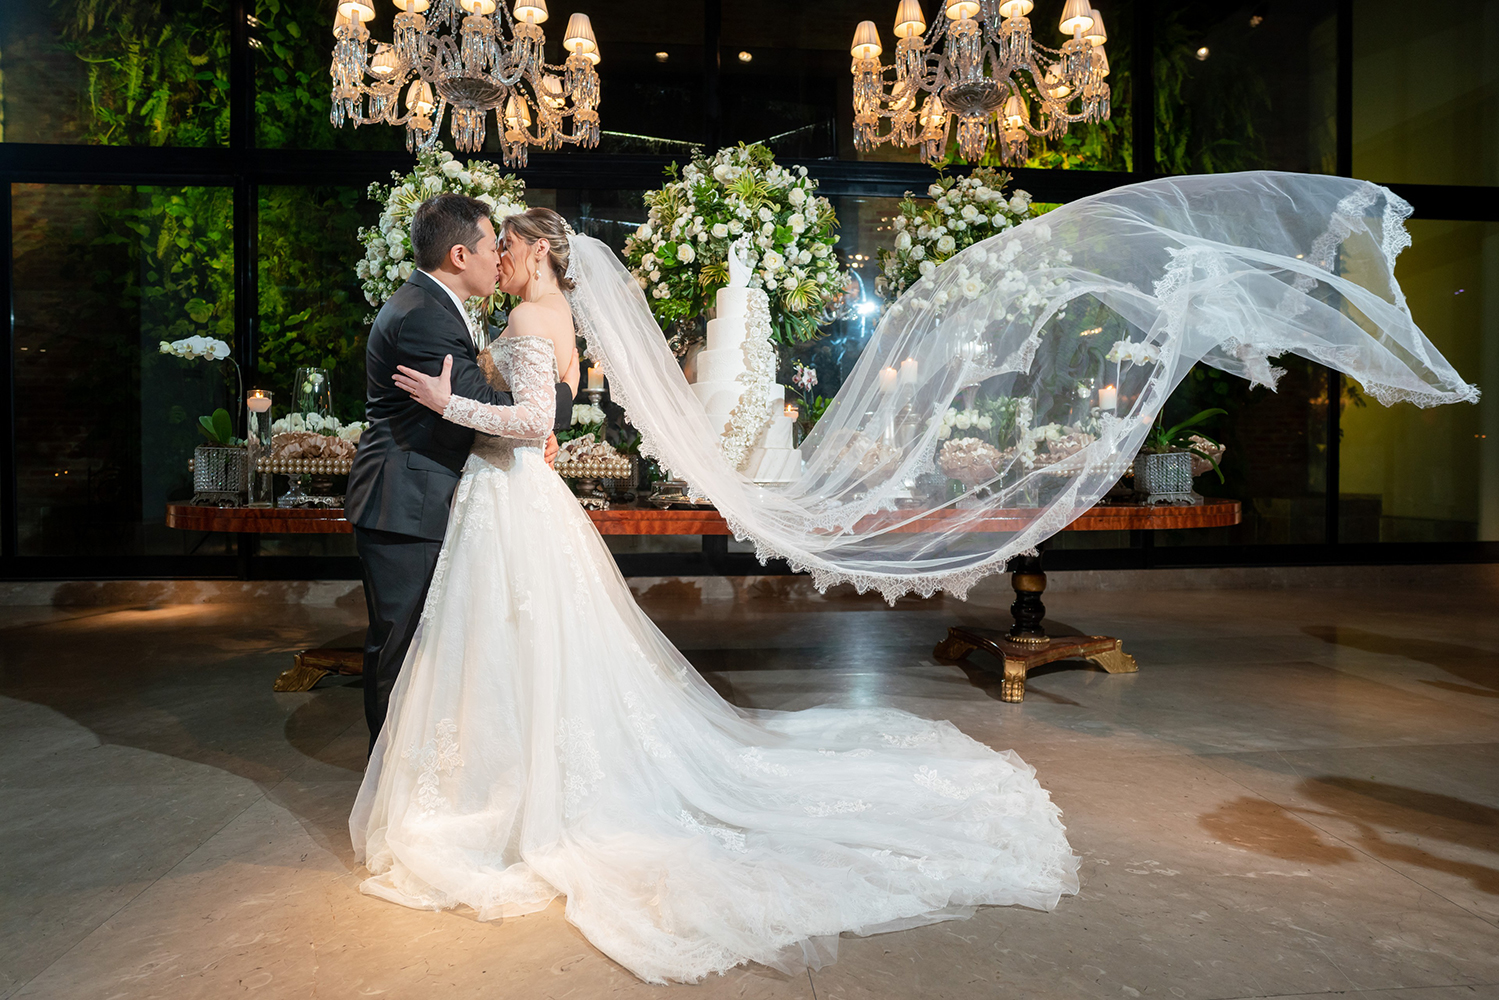 Viviane e Marco | Casamento clássico dos sonhos